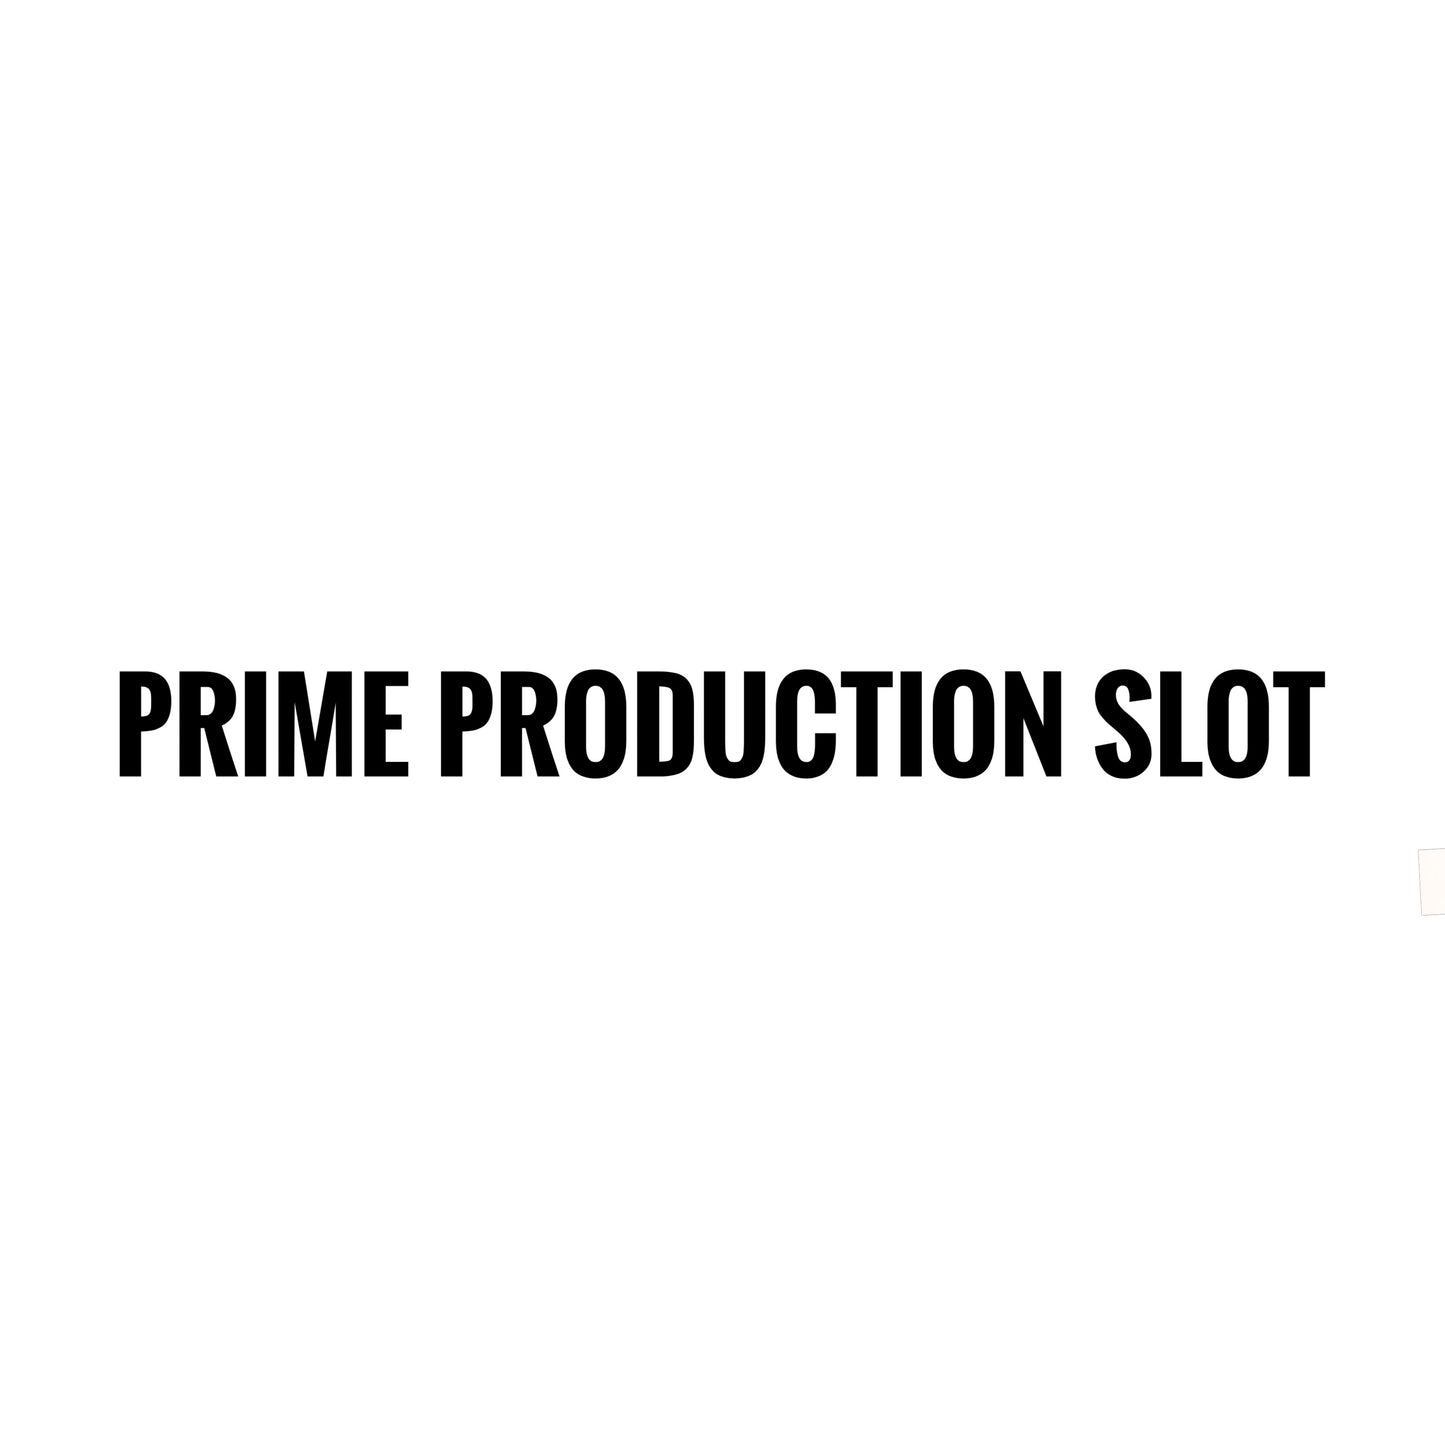 Prime production slot